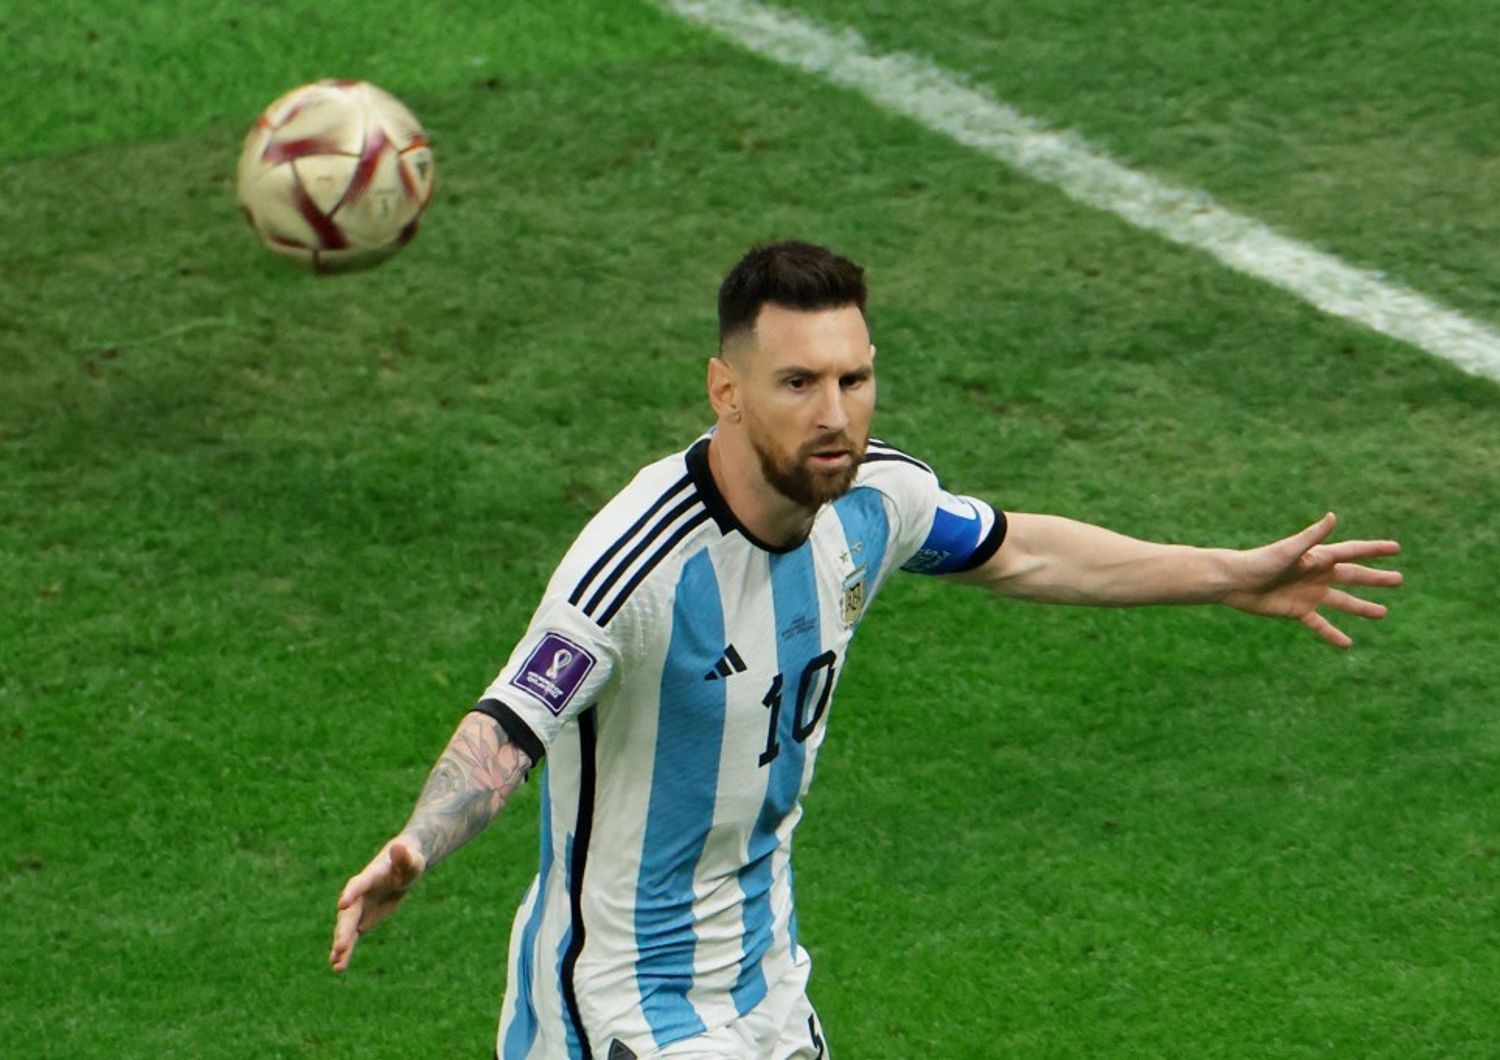 Leo Messi festeggia il primo gol